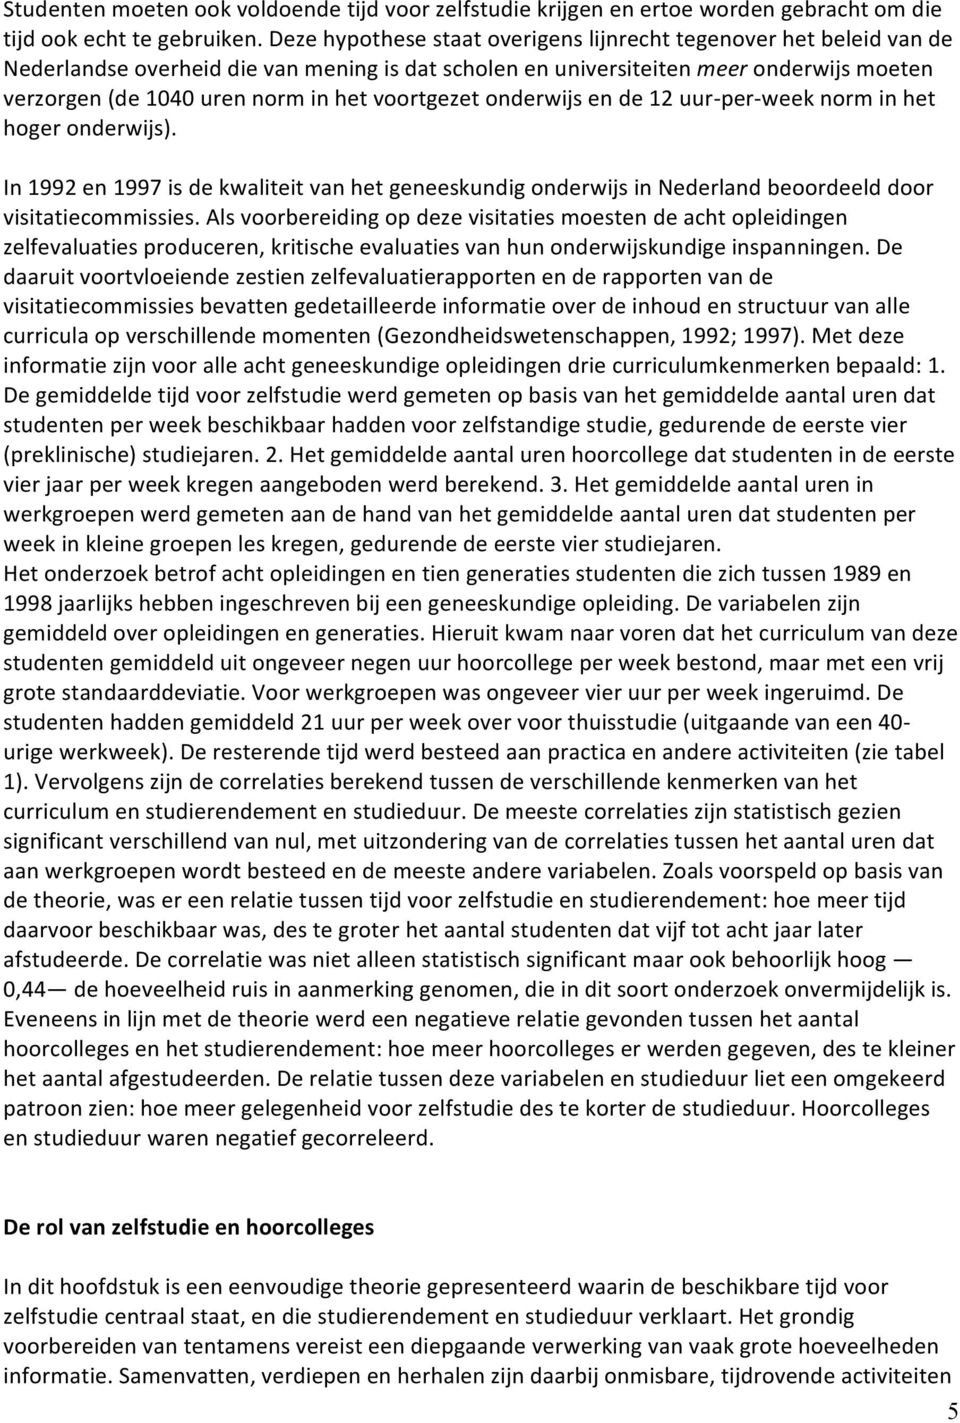 voortgezet onderwijs en de 12 uur- per- week norm in het hoger onderwijs). In 1992 en 1997 is de kwaliteit van het geneeskundig onderwijs in Nederland beoordeeld door visitatiecommissies.